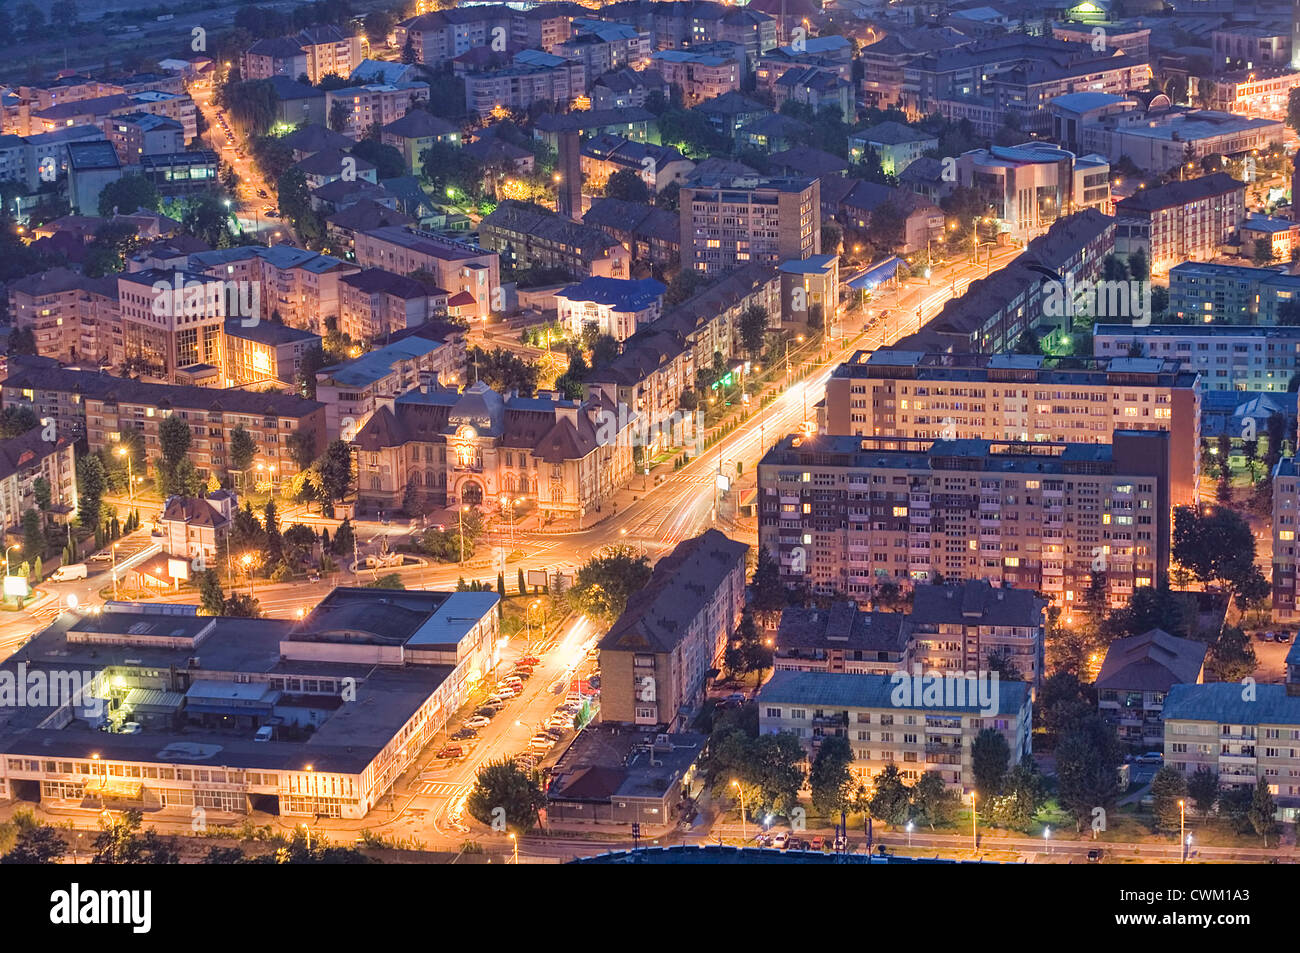 Piatra Neamt city at night, Romania Stock Photo